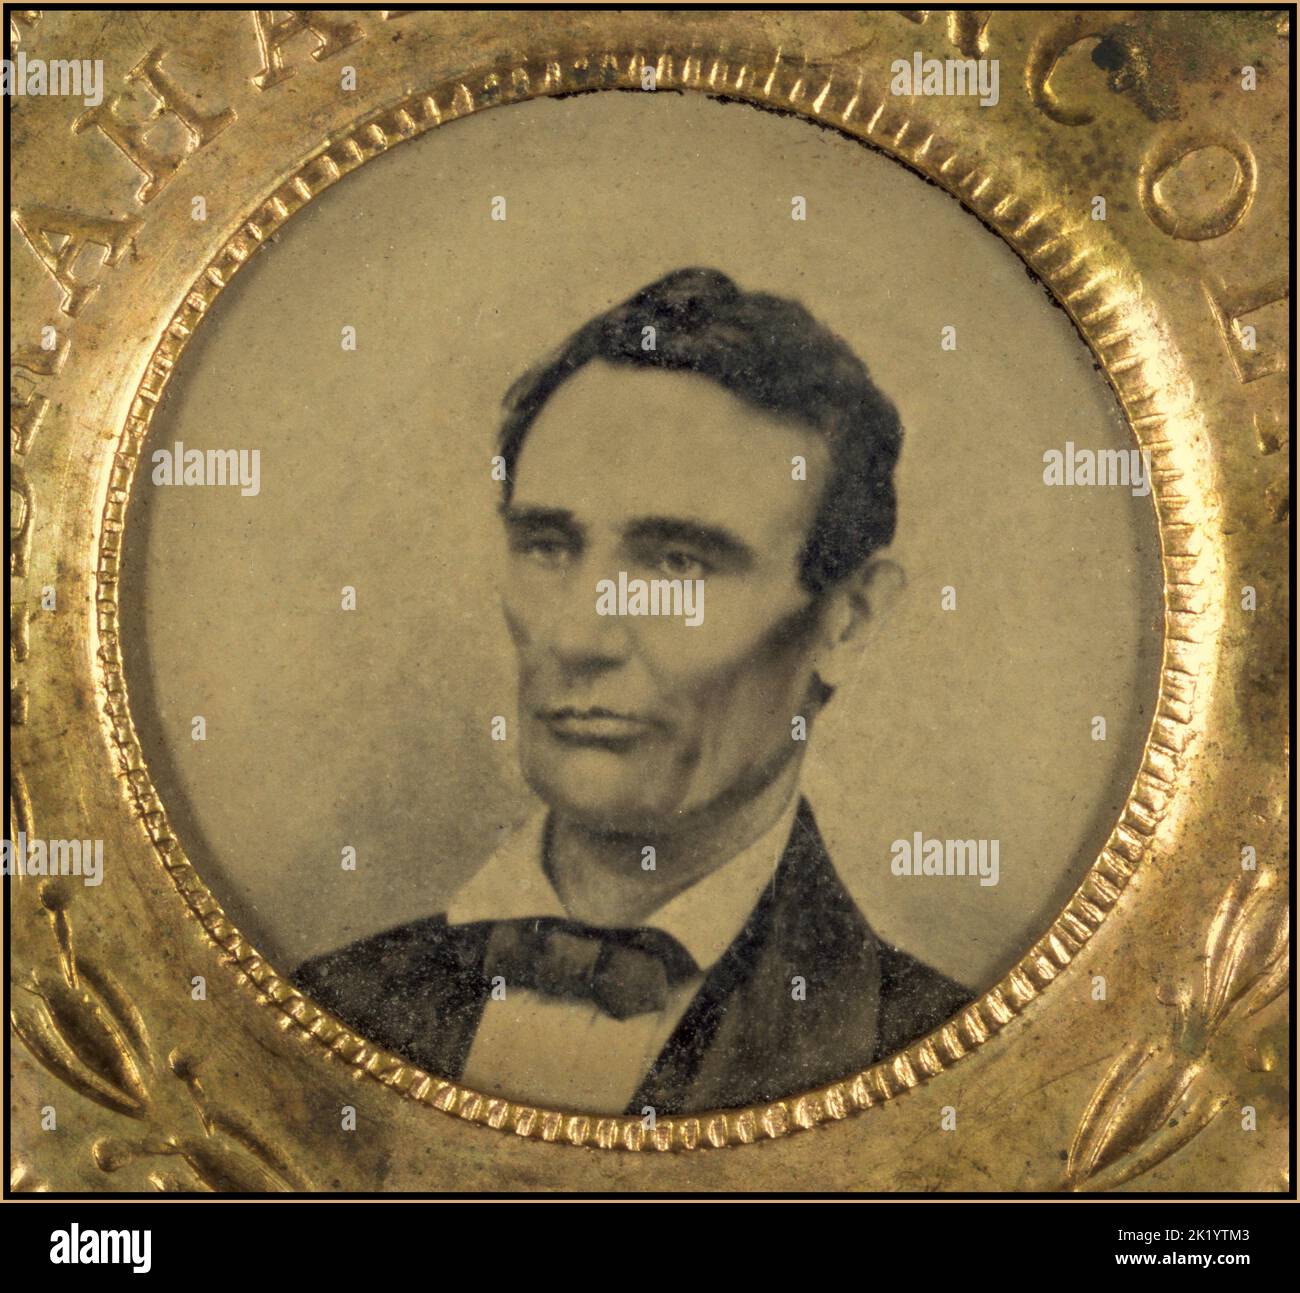 Wahlkampfknopf für Abraham Lincoln, 1860. Hochformat wird in Weißform angezeigt. Die Rückseite des Knopfes ist ein Tintype des Laufgefährten Hannibal Hamlin. Eines der frühesten Beispiele von fotografischen Bildern auf politischen Knöpfen. Datum 1860 Stockfoto